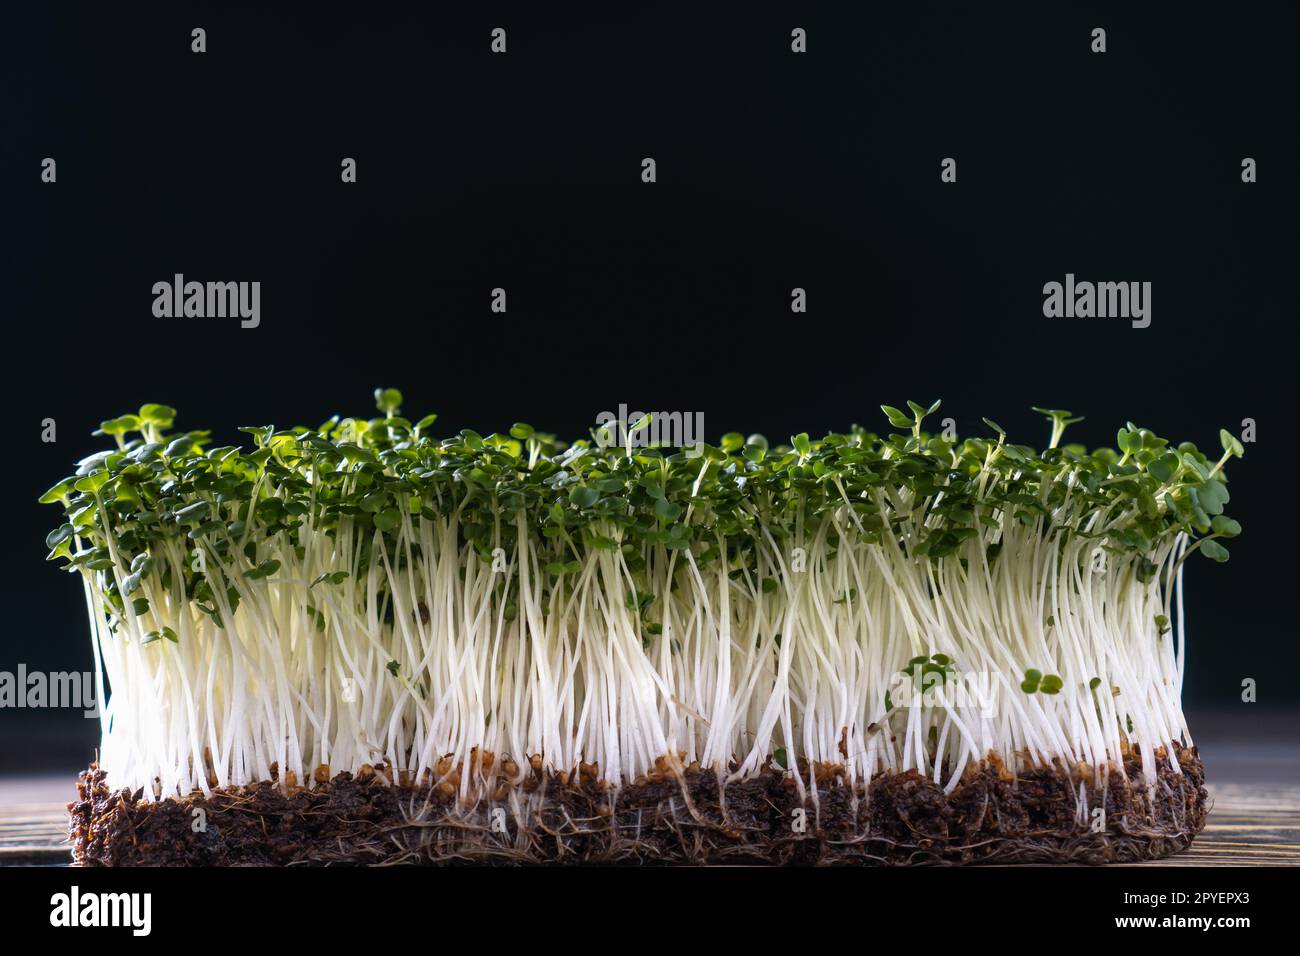 Mikrogrün-Anbau im Haushalt. Ein Behälter mit mikrogrünen Sprossen an der schwarzen Wand. Wachsende Stängel mit grünen Blättern. Stockfoto